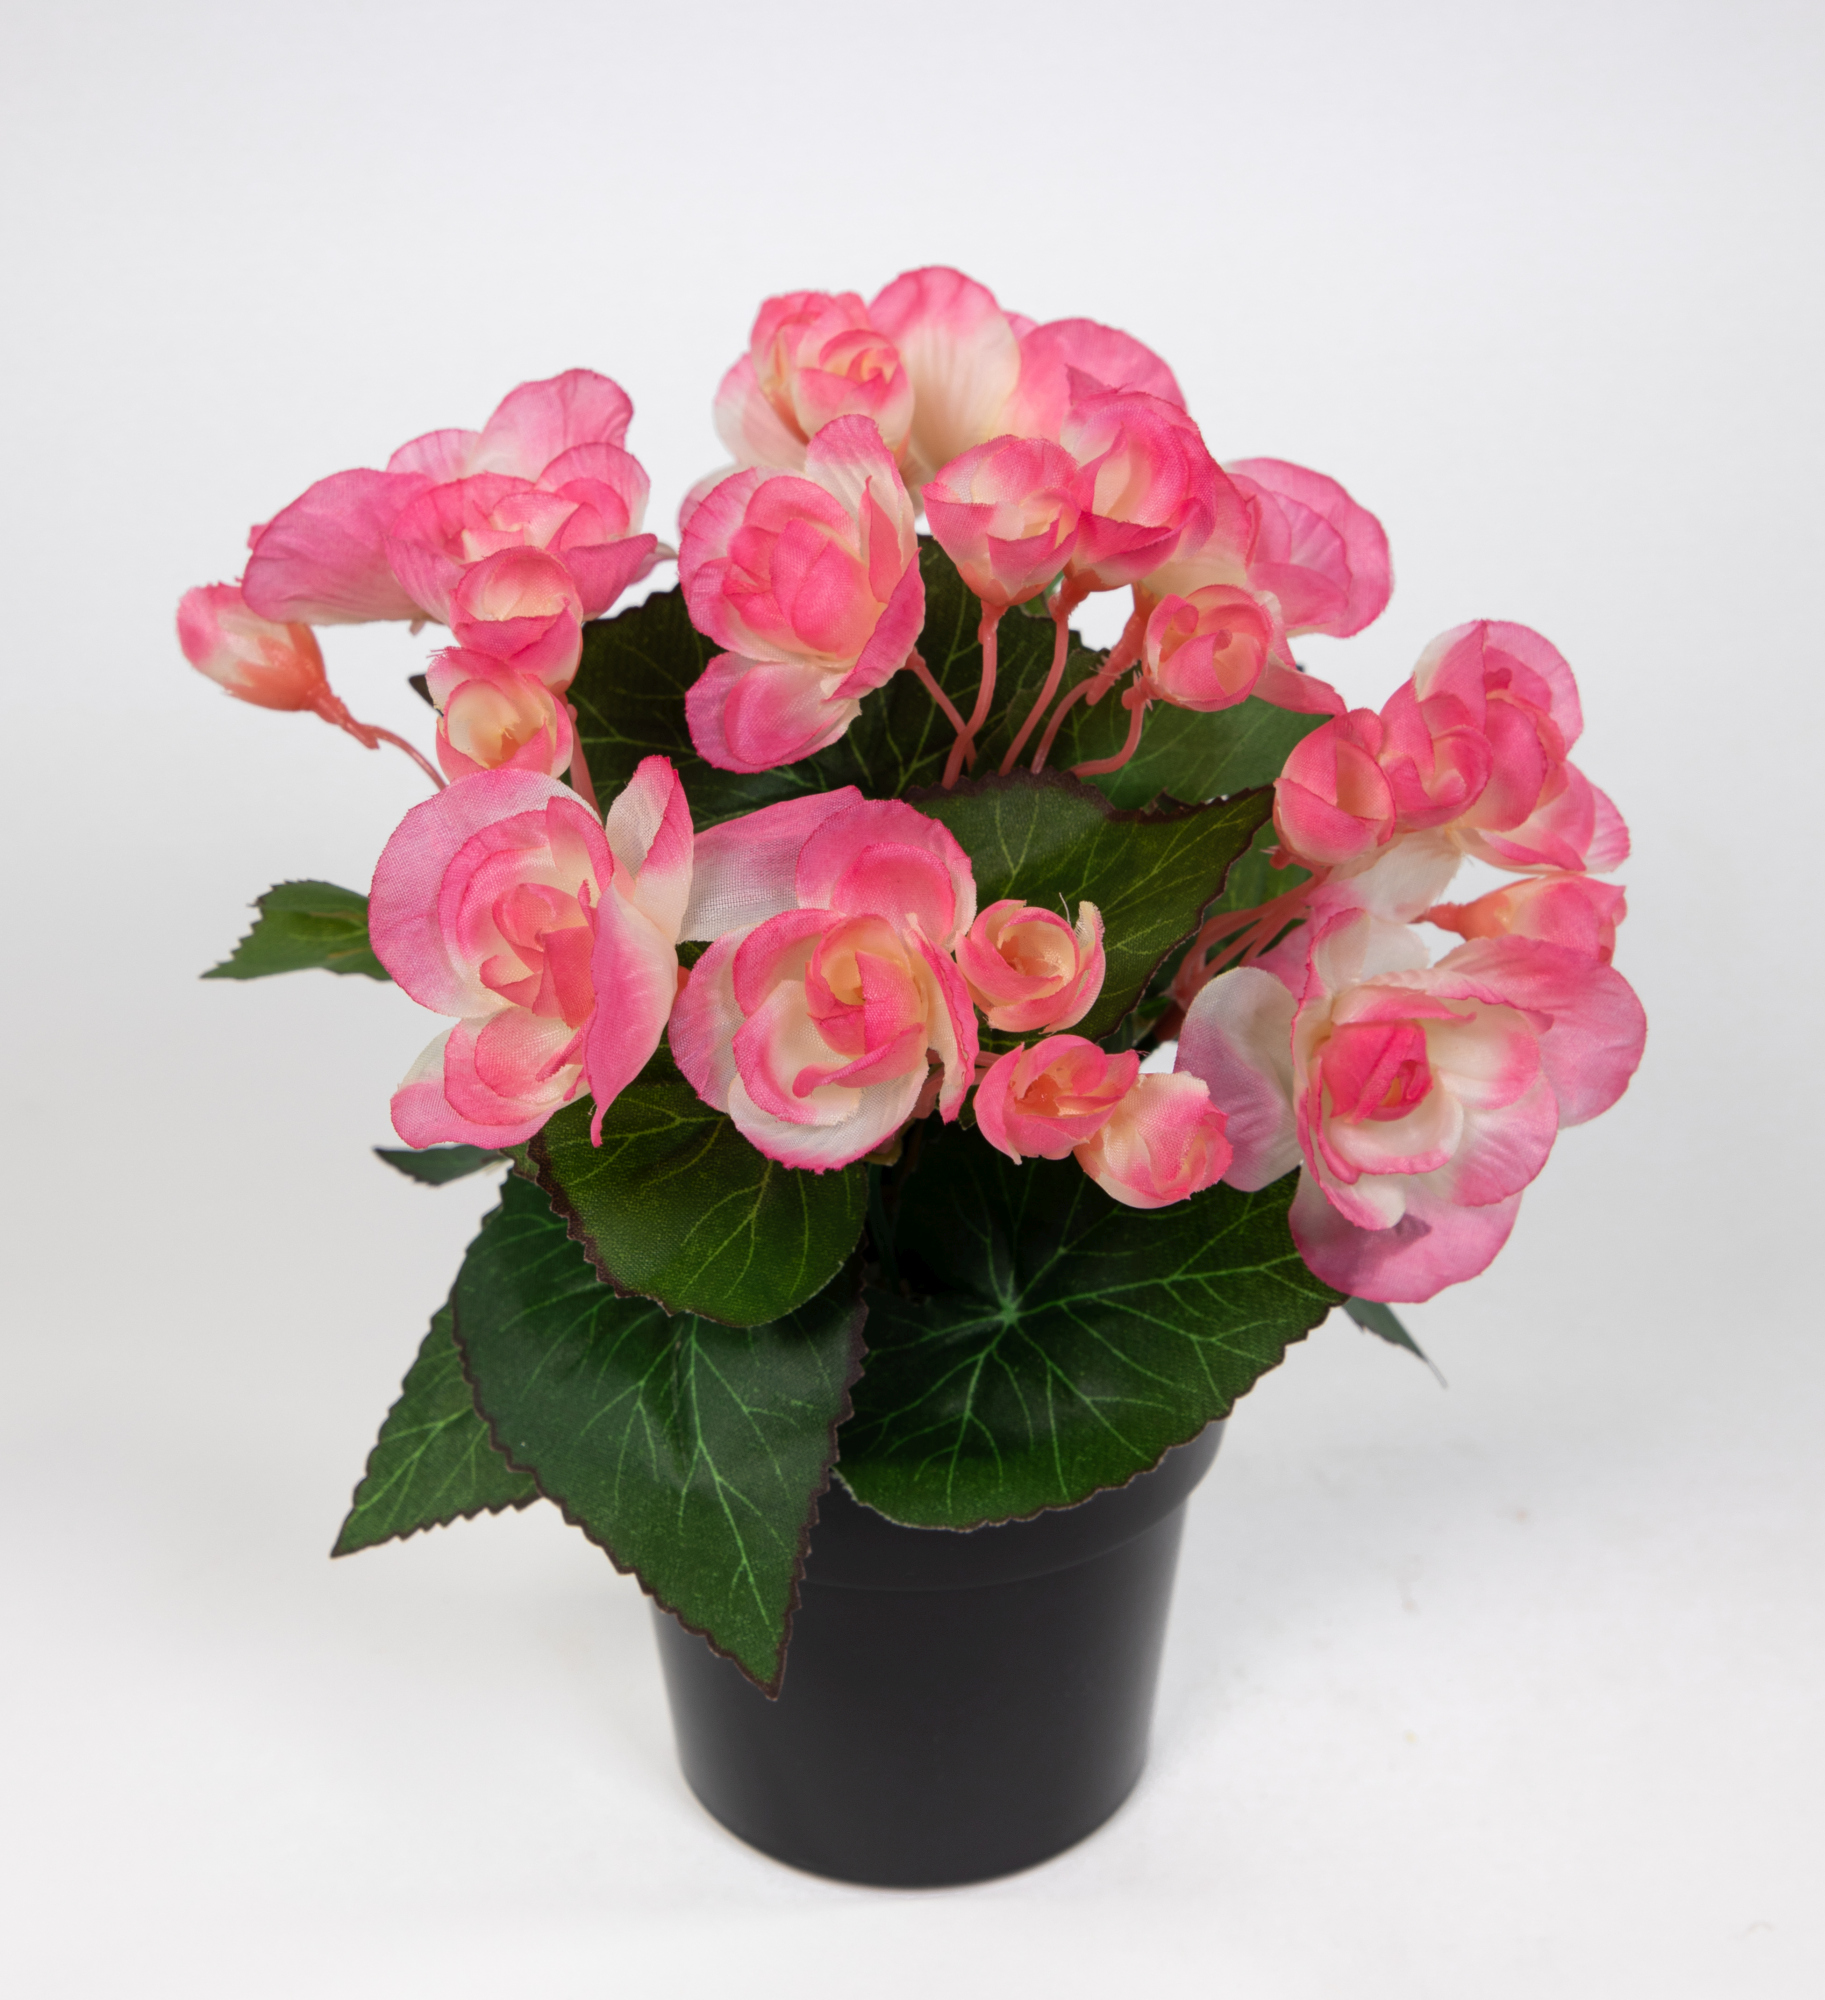 Begonie 20cm rosa im Topf JA Kunstpflanzen Begonienbusch künstliche Blumen Pflanzen Kunstblumen